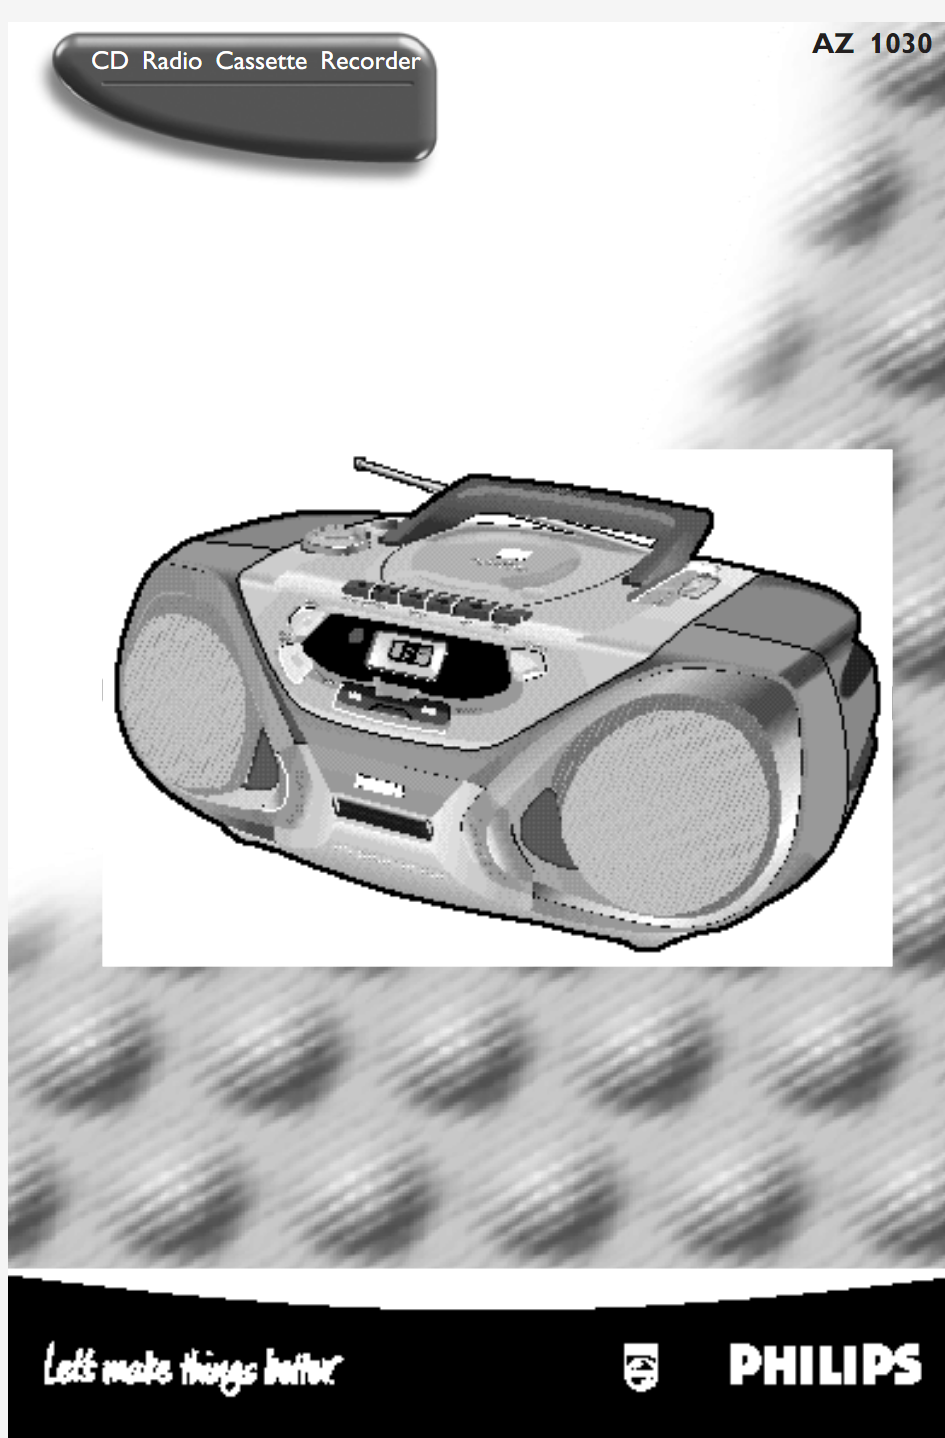 飞利浦PHILIPS AZ 1030 CD Radio Cassette Recorder User Guide ( English )说明书